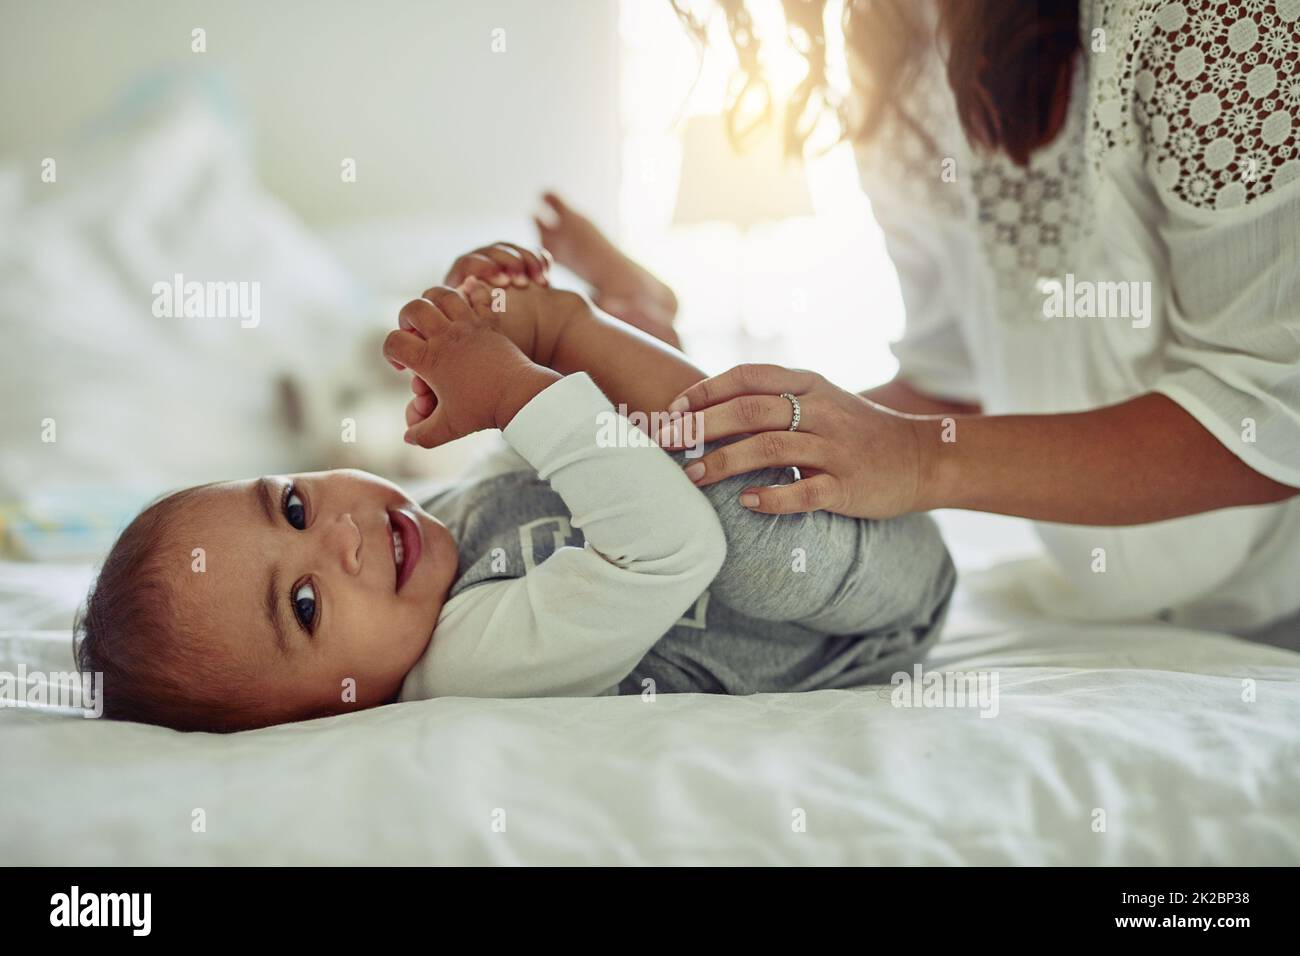 Le sourire d'un enfant est la vue la plus précieuse. Photo d'une mère méconnue et de son adorable bébé garçon jouant ensemble à la maison. Banque D'Images